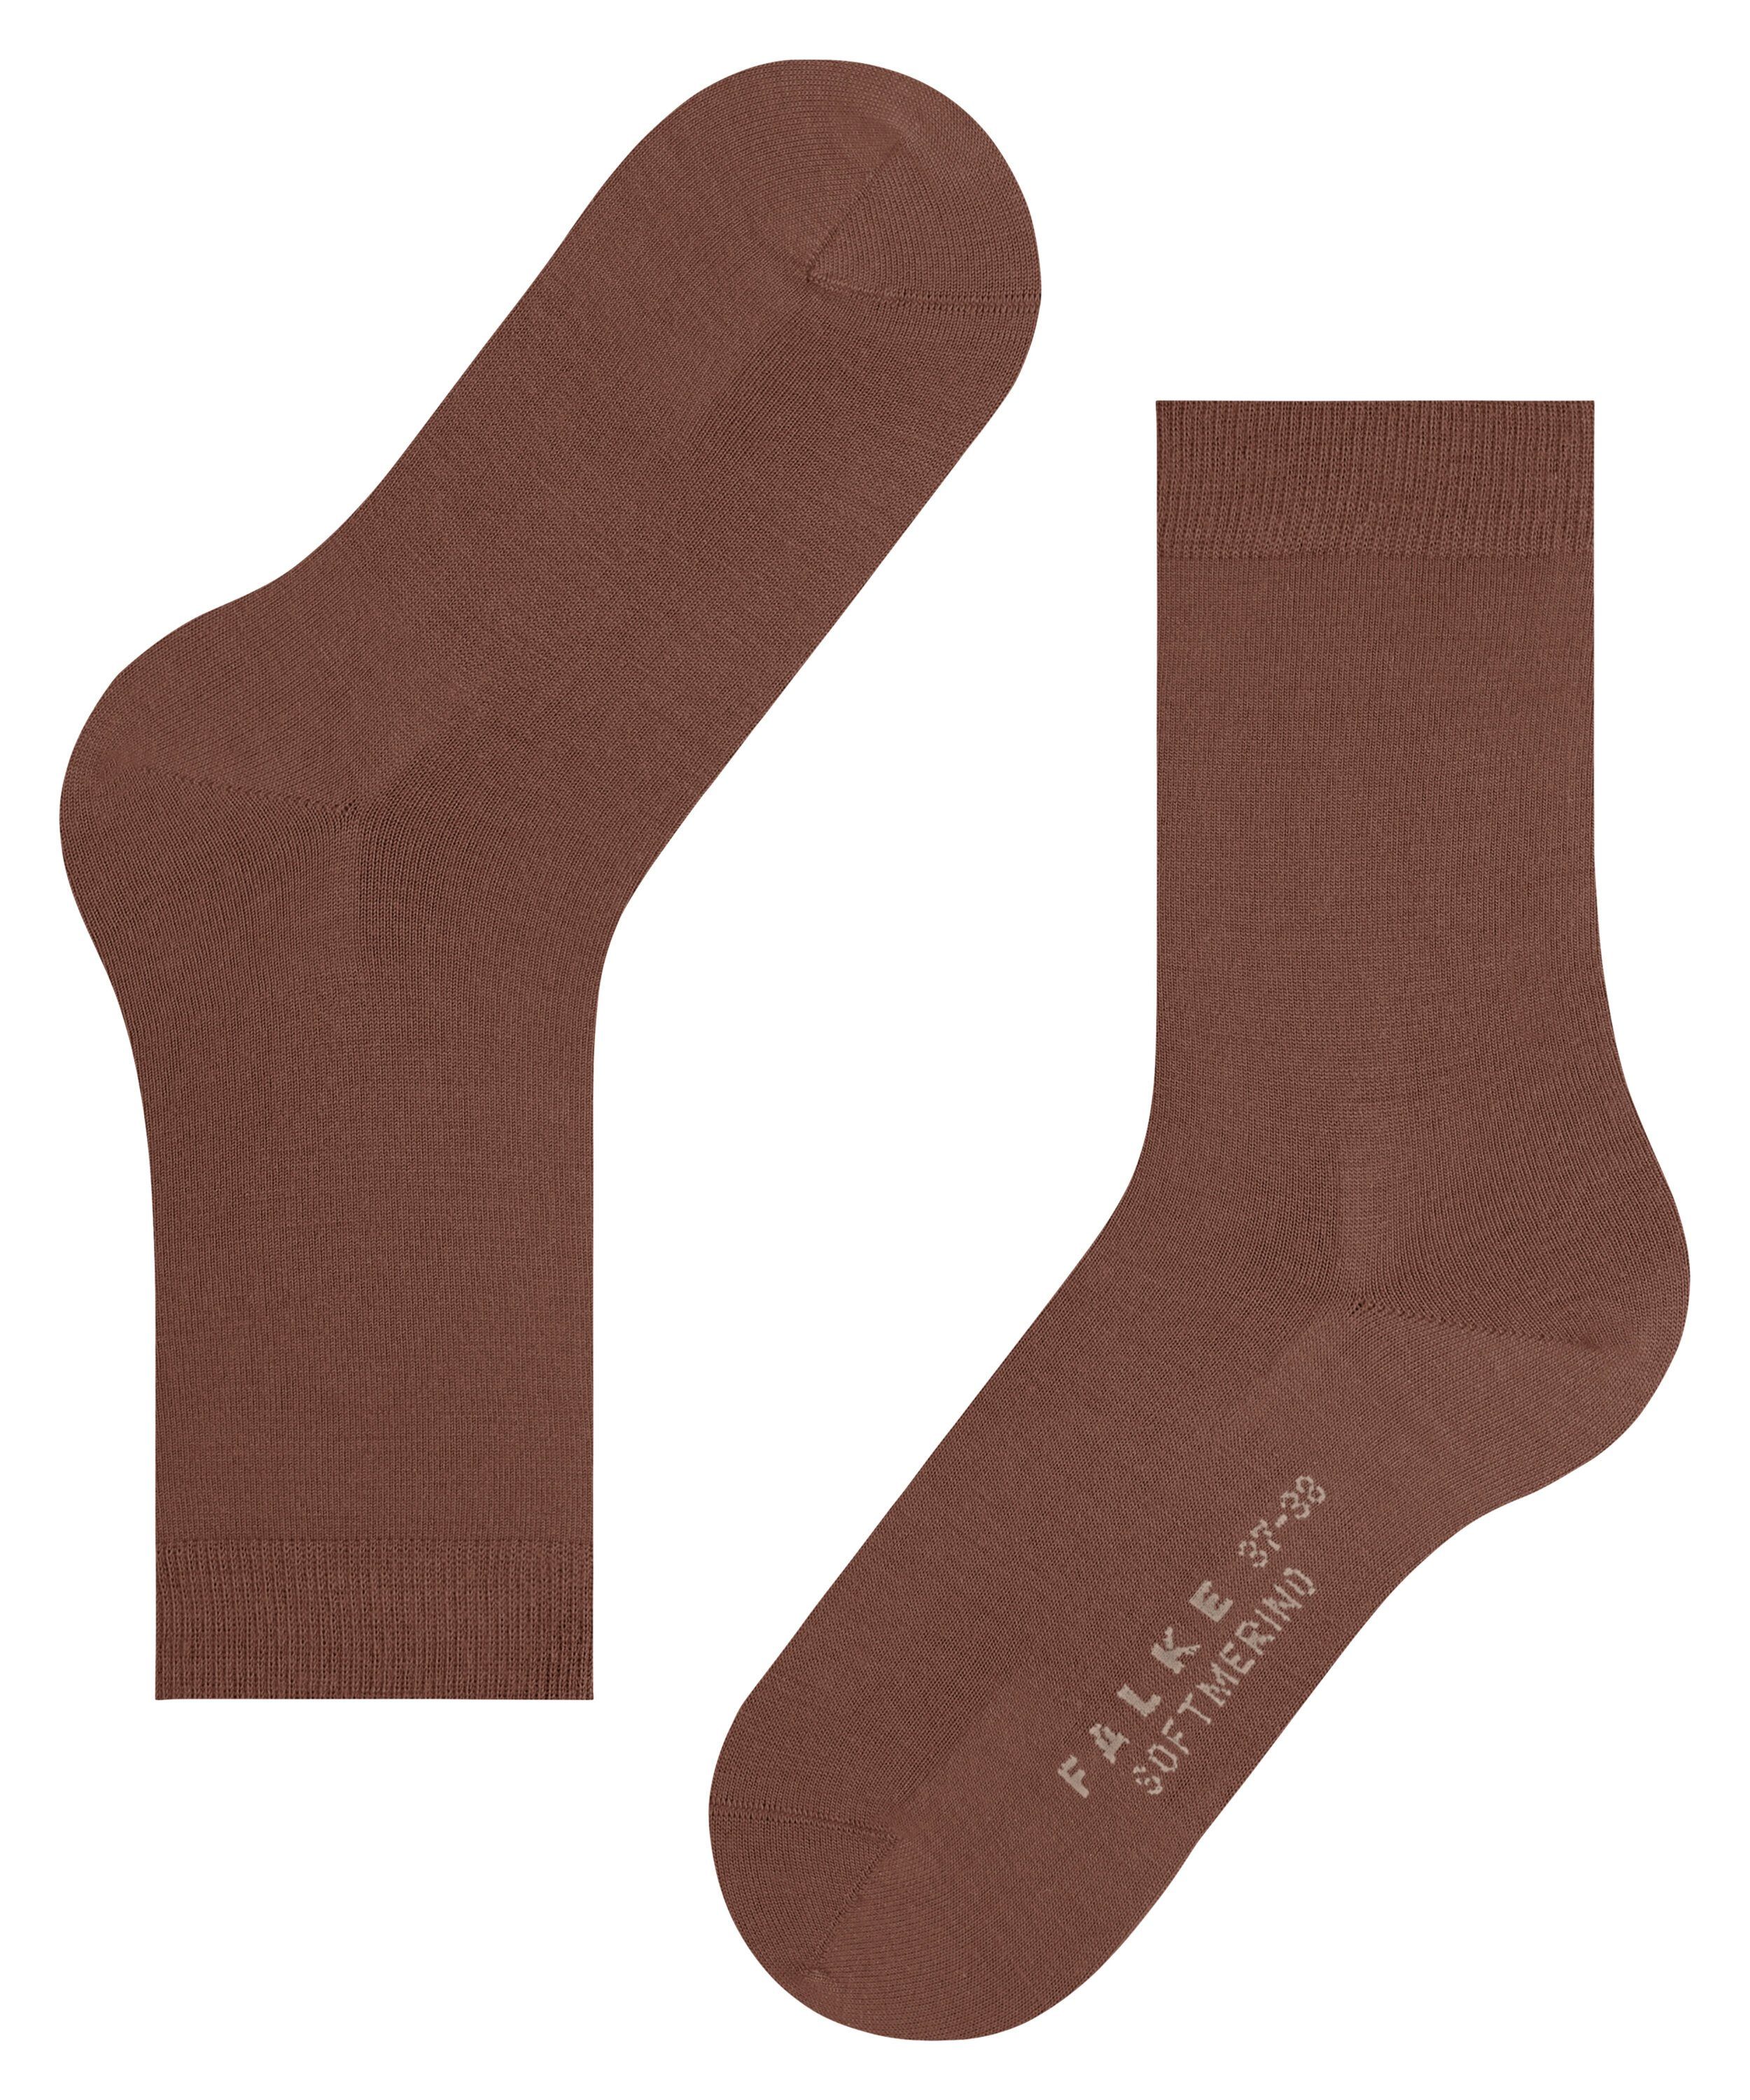 brandy (5167) Softmerino (1-Paar) Socken FALKE